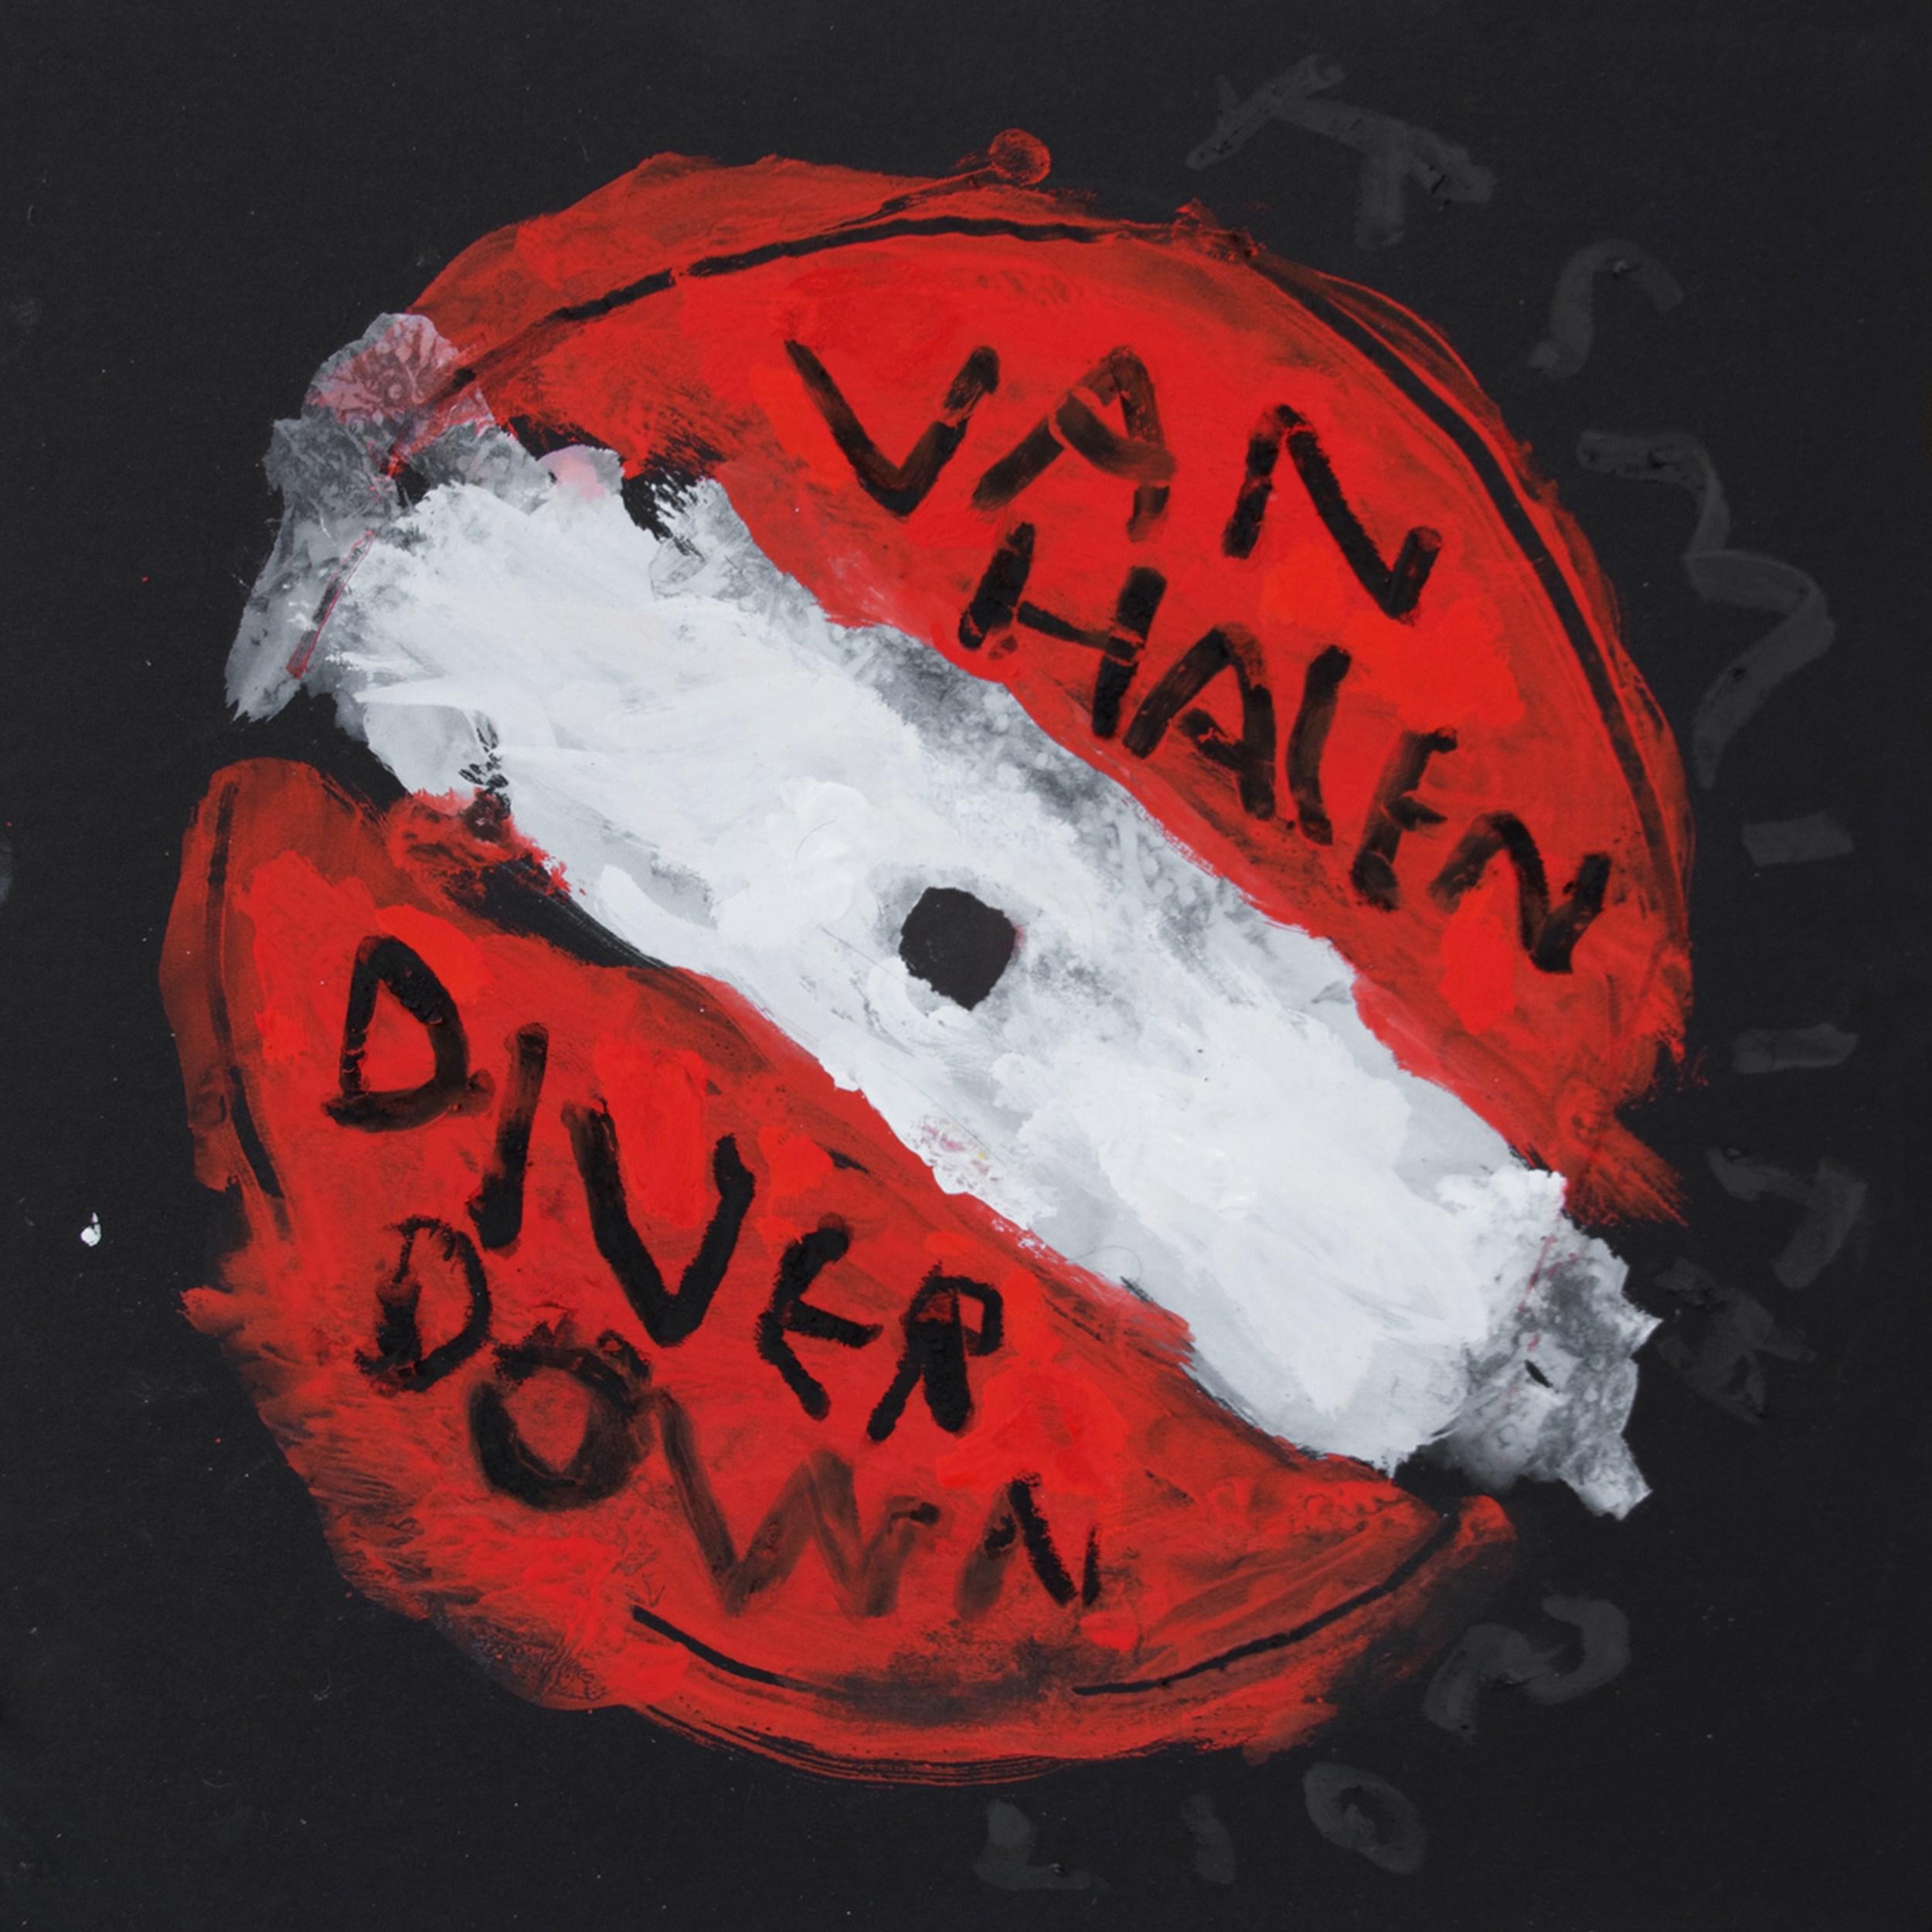 Van Halen - Diver Down (Sello discográfico, listas de canciones, arte pop contemporáneo)